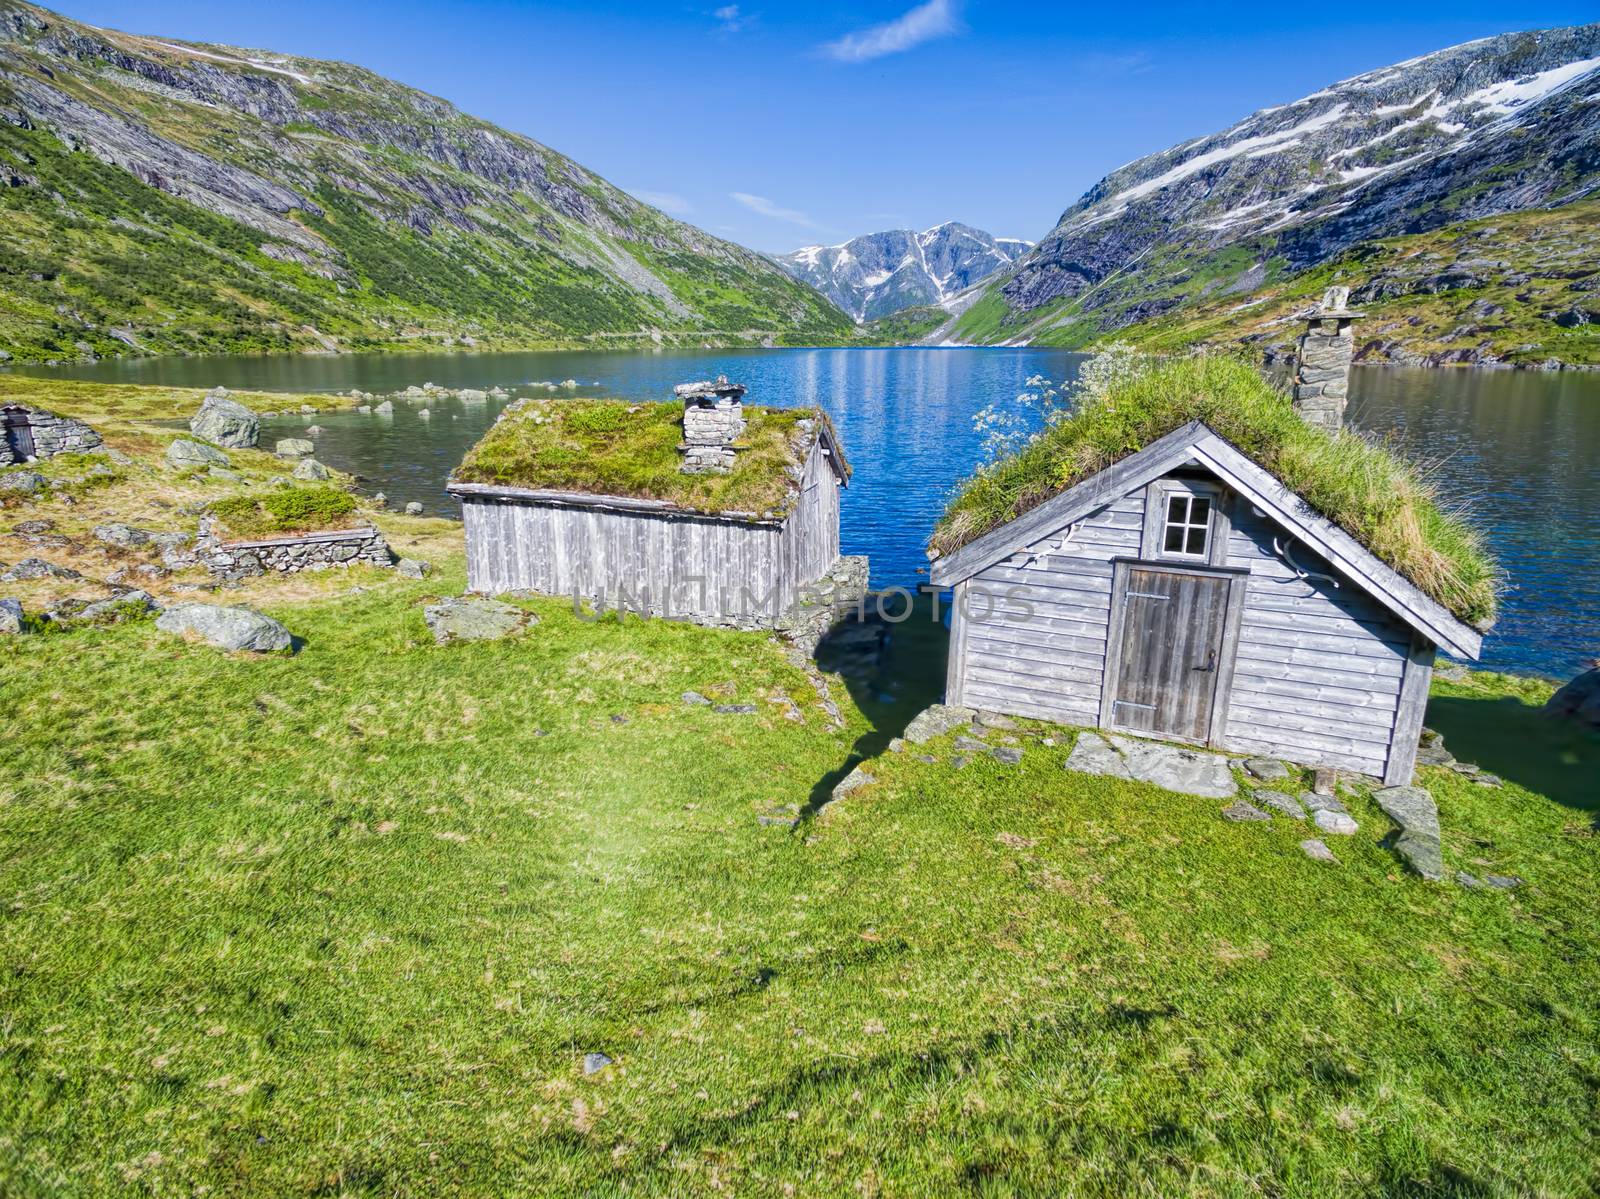 Norwegian huts by Harvepino